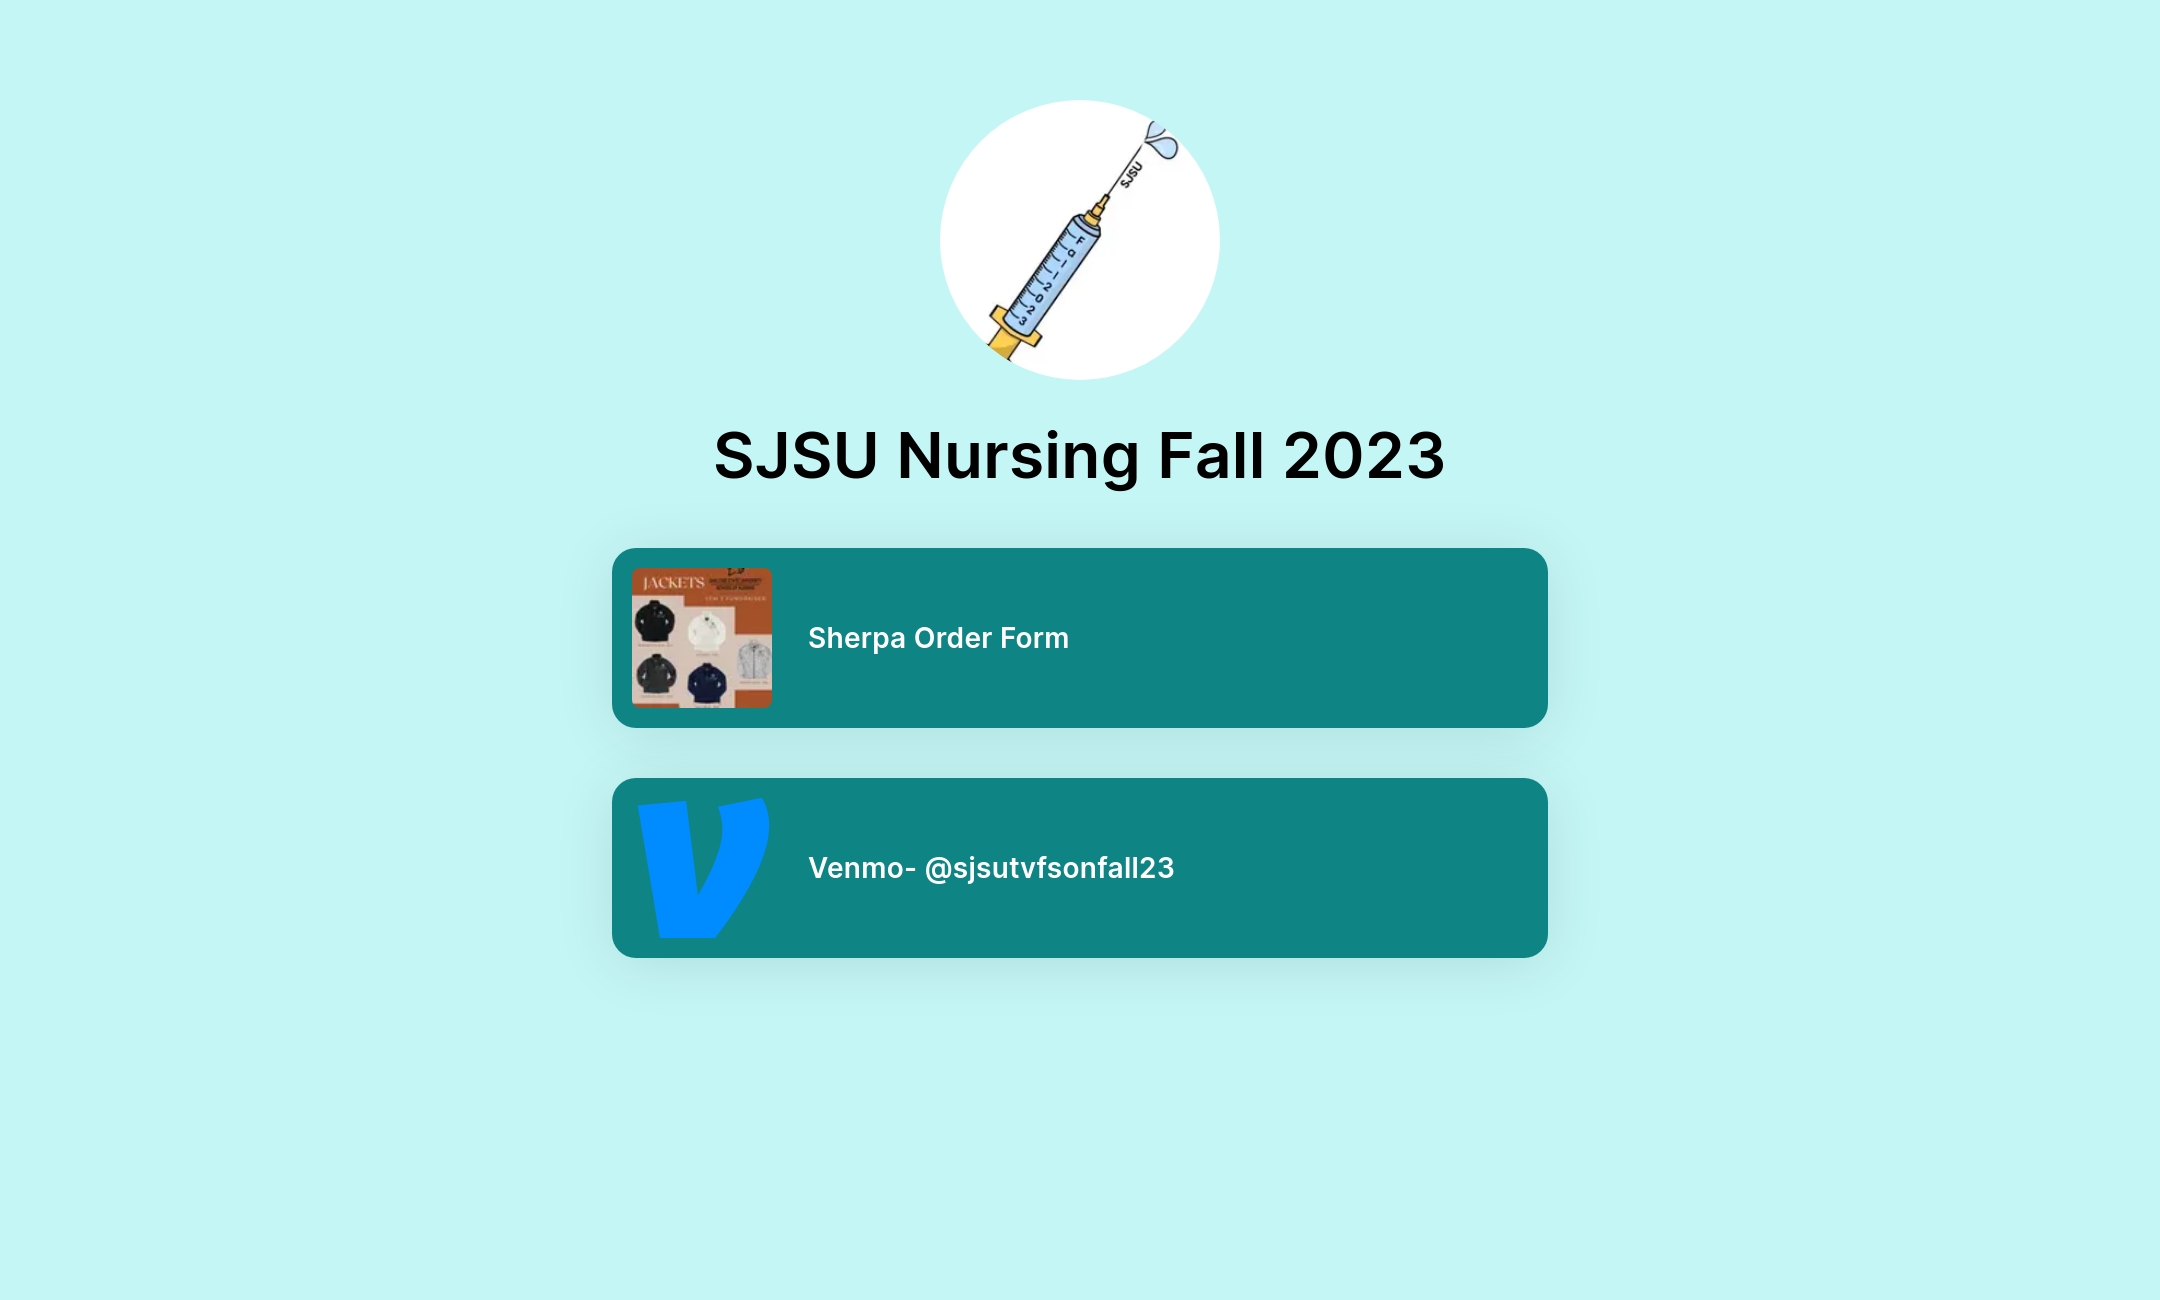 SJSU Nursing Fall 2023's Flowpage